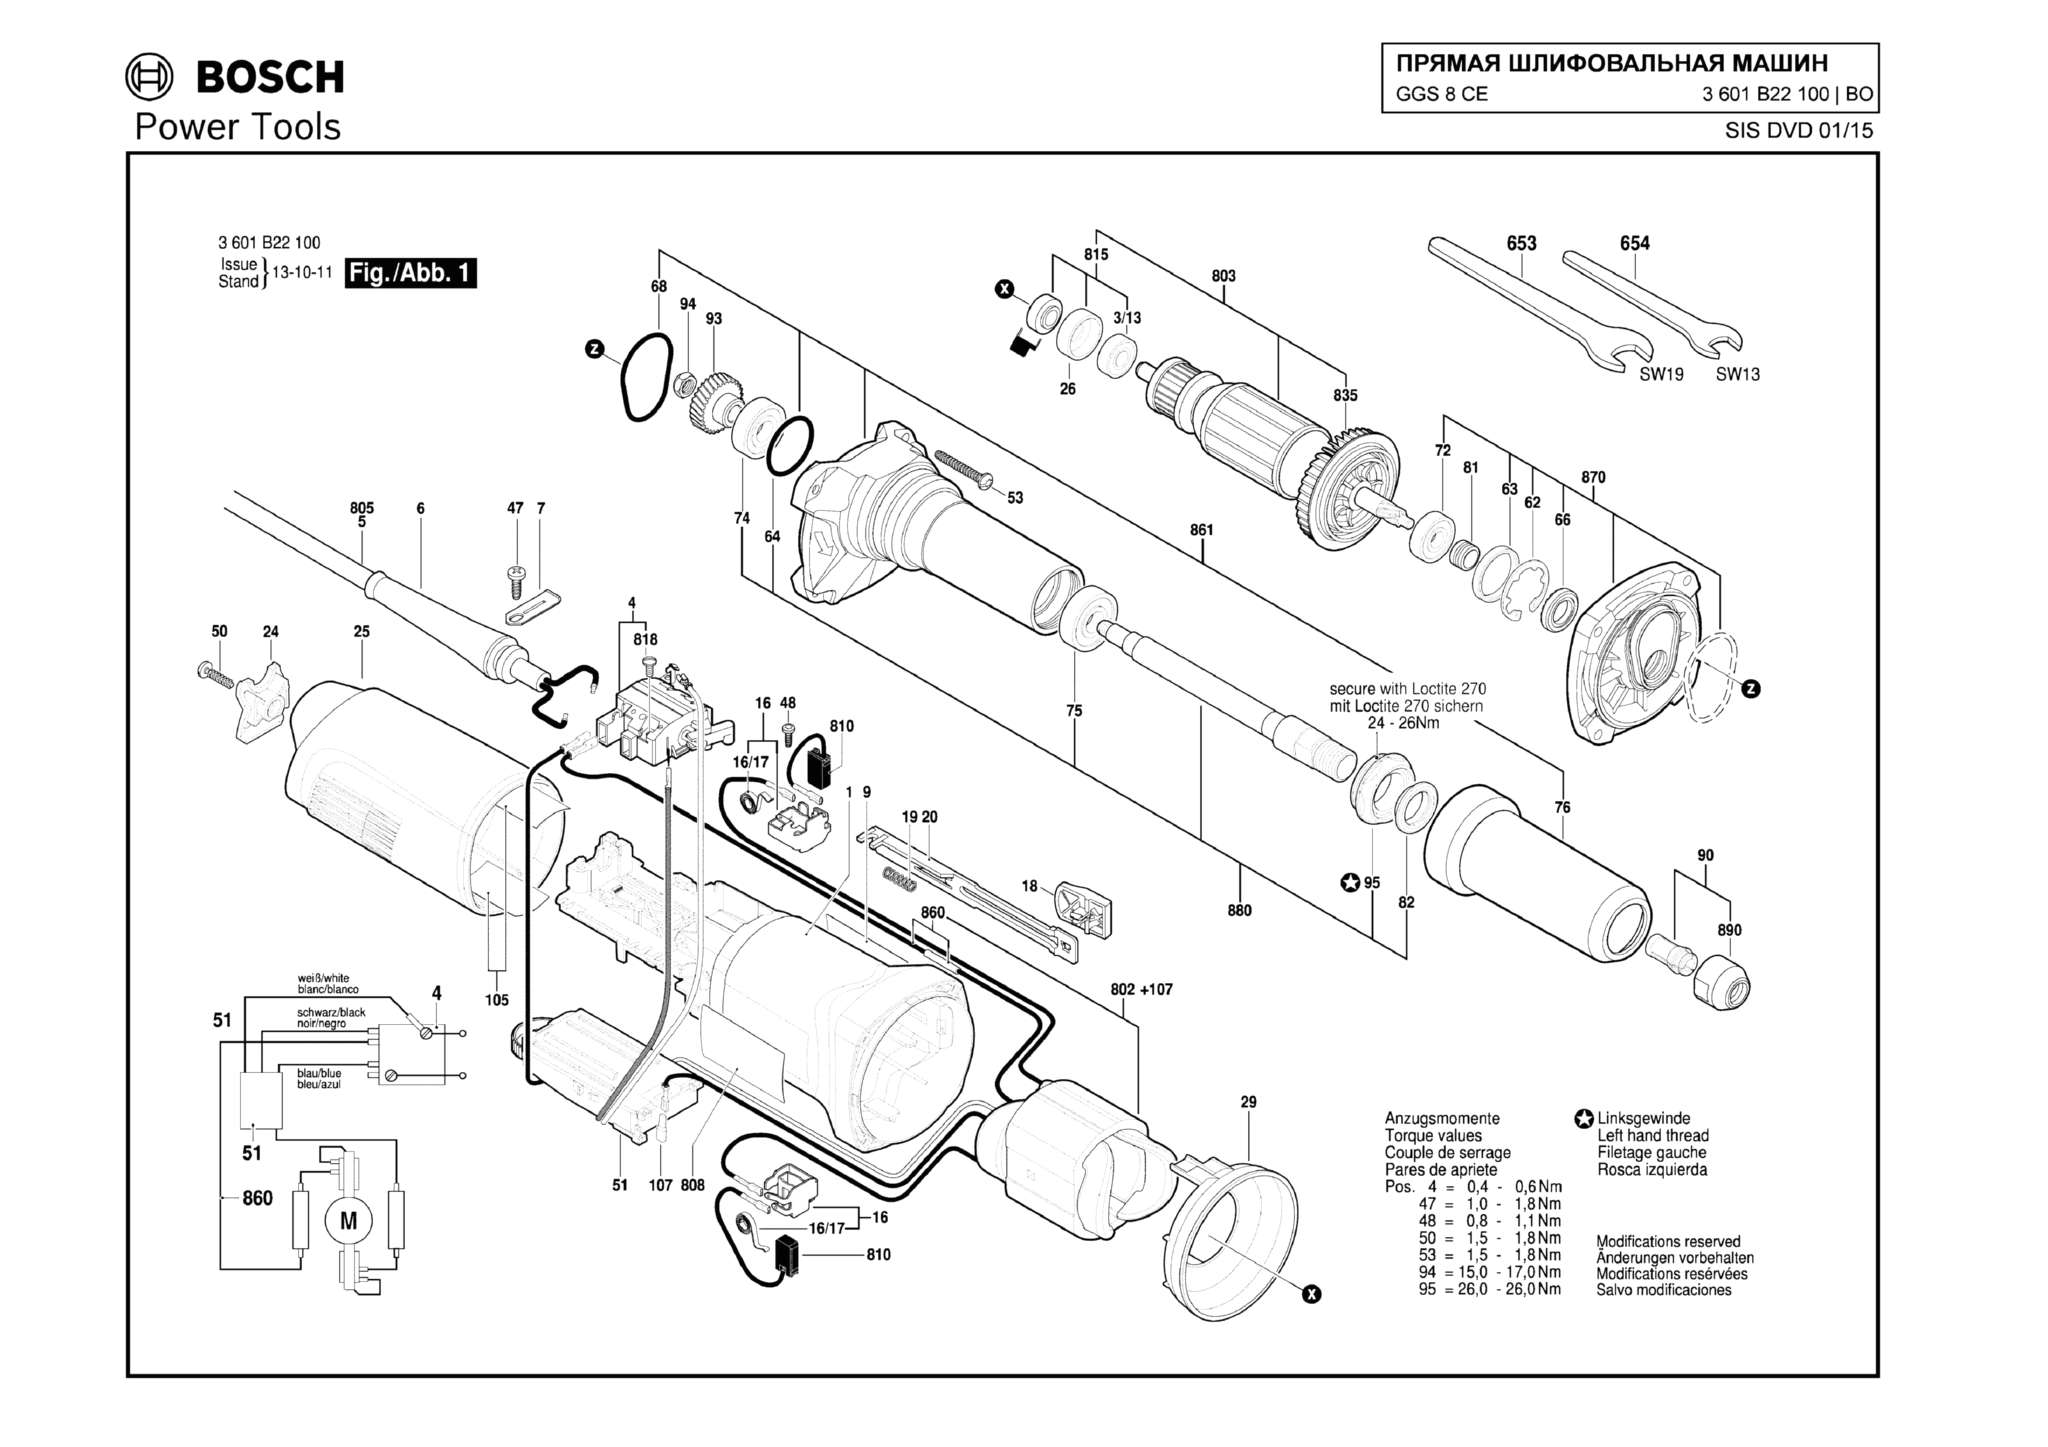 Запчасти, схема и деталировка Bosch GGS 8 CE (ТИП 3601B22100)